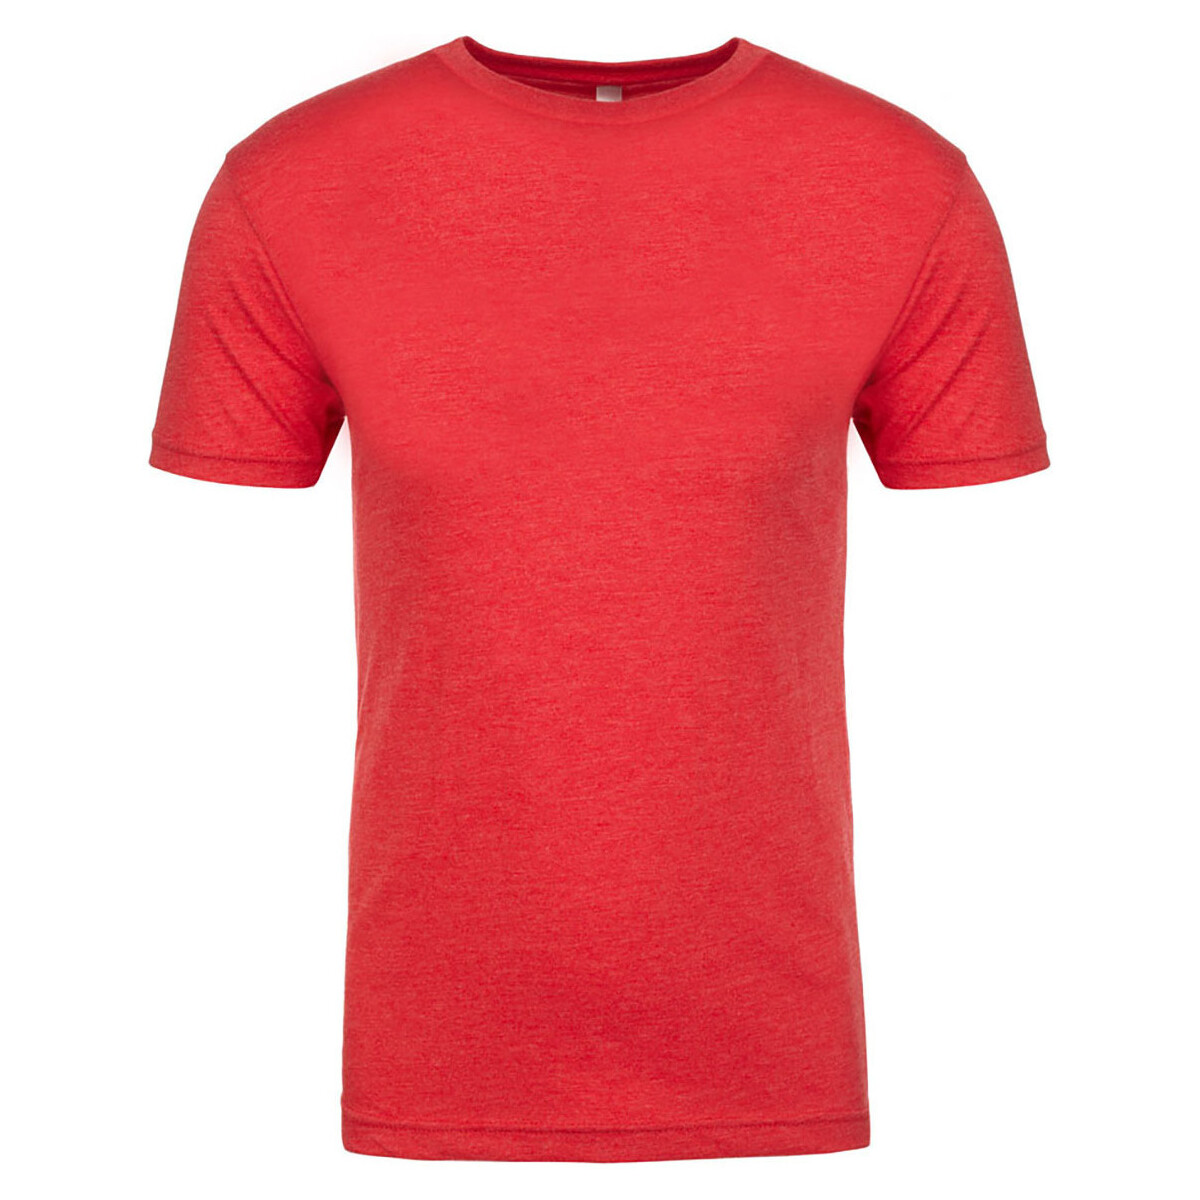 Vêtements Homme T-shirts manches longues Next Level Tri-Blend Rouge